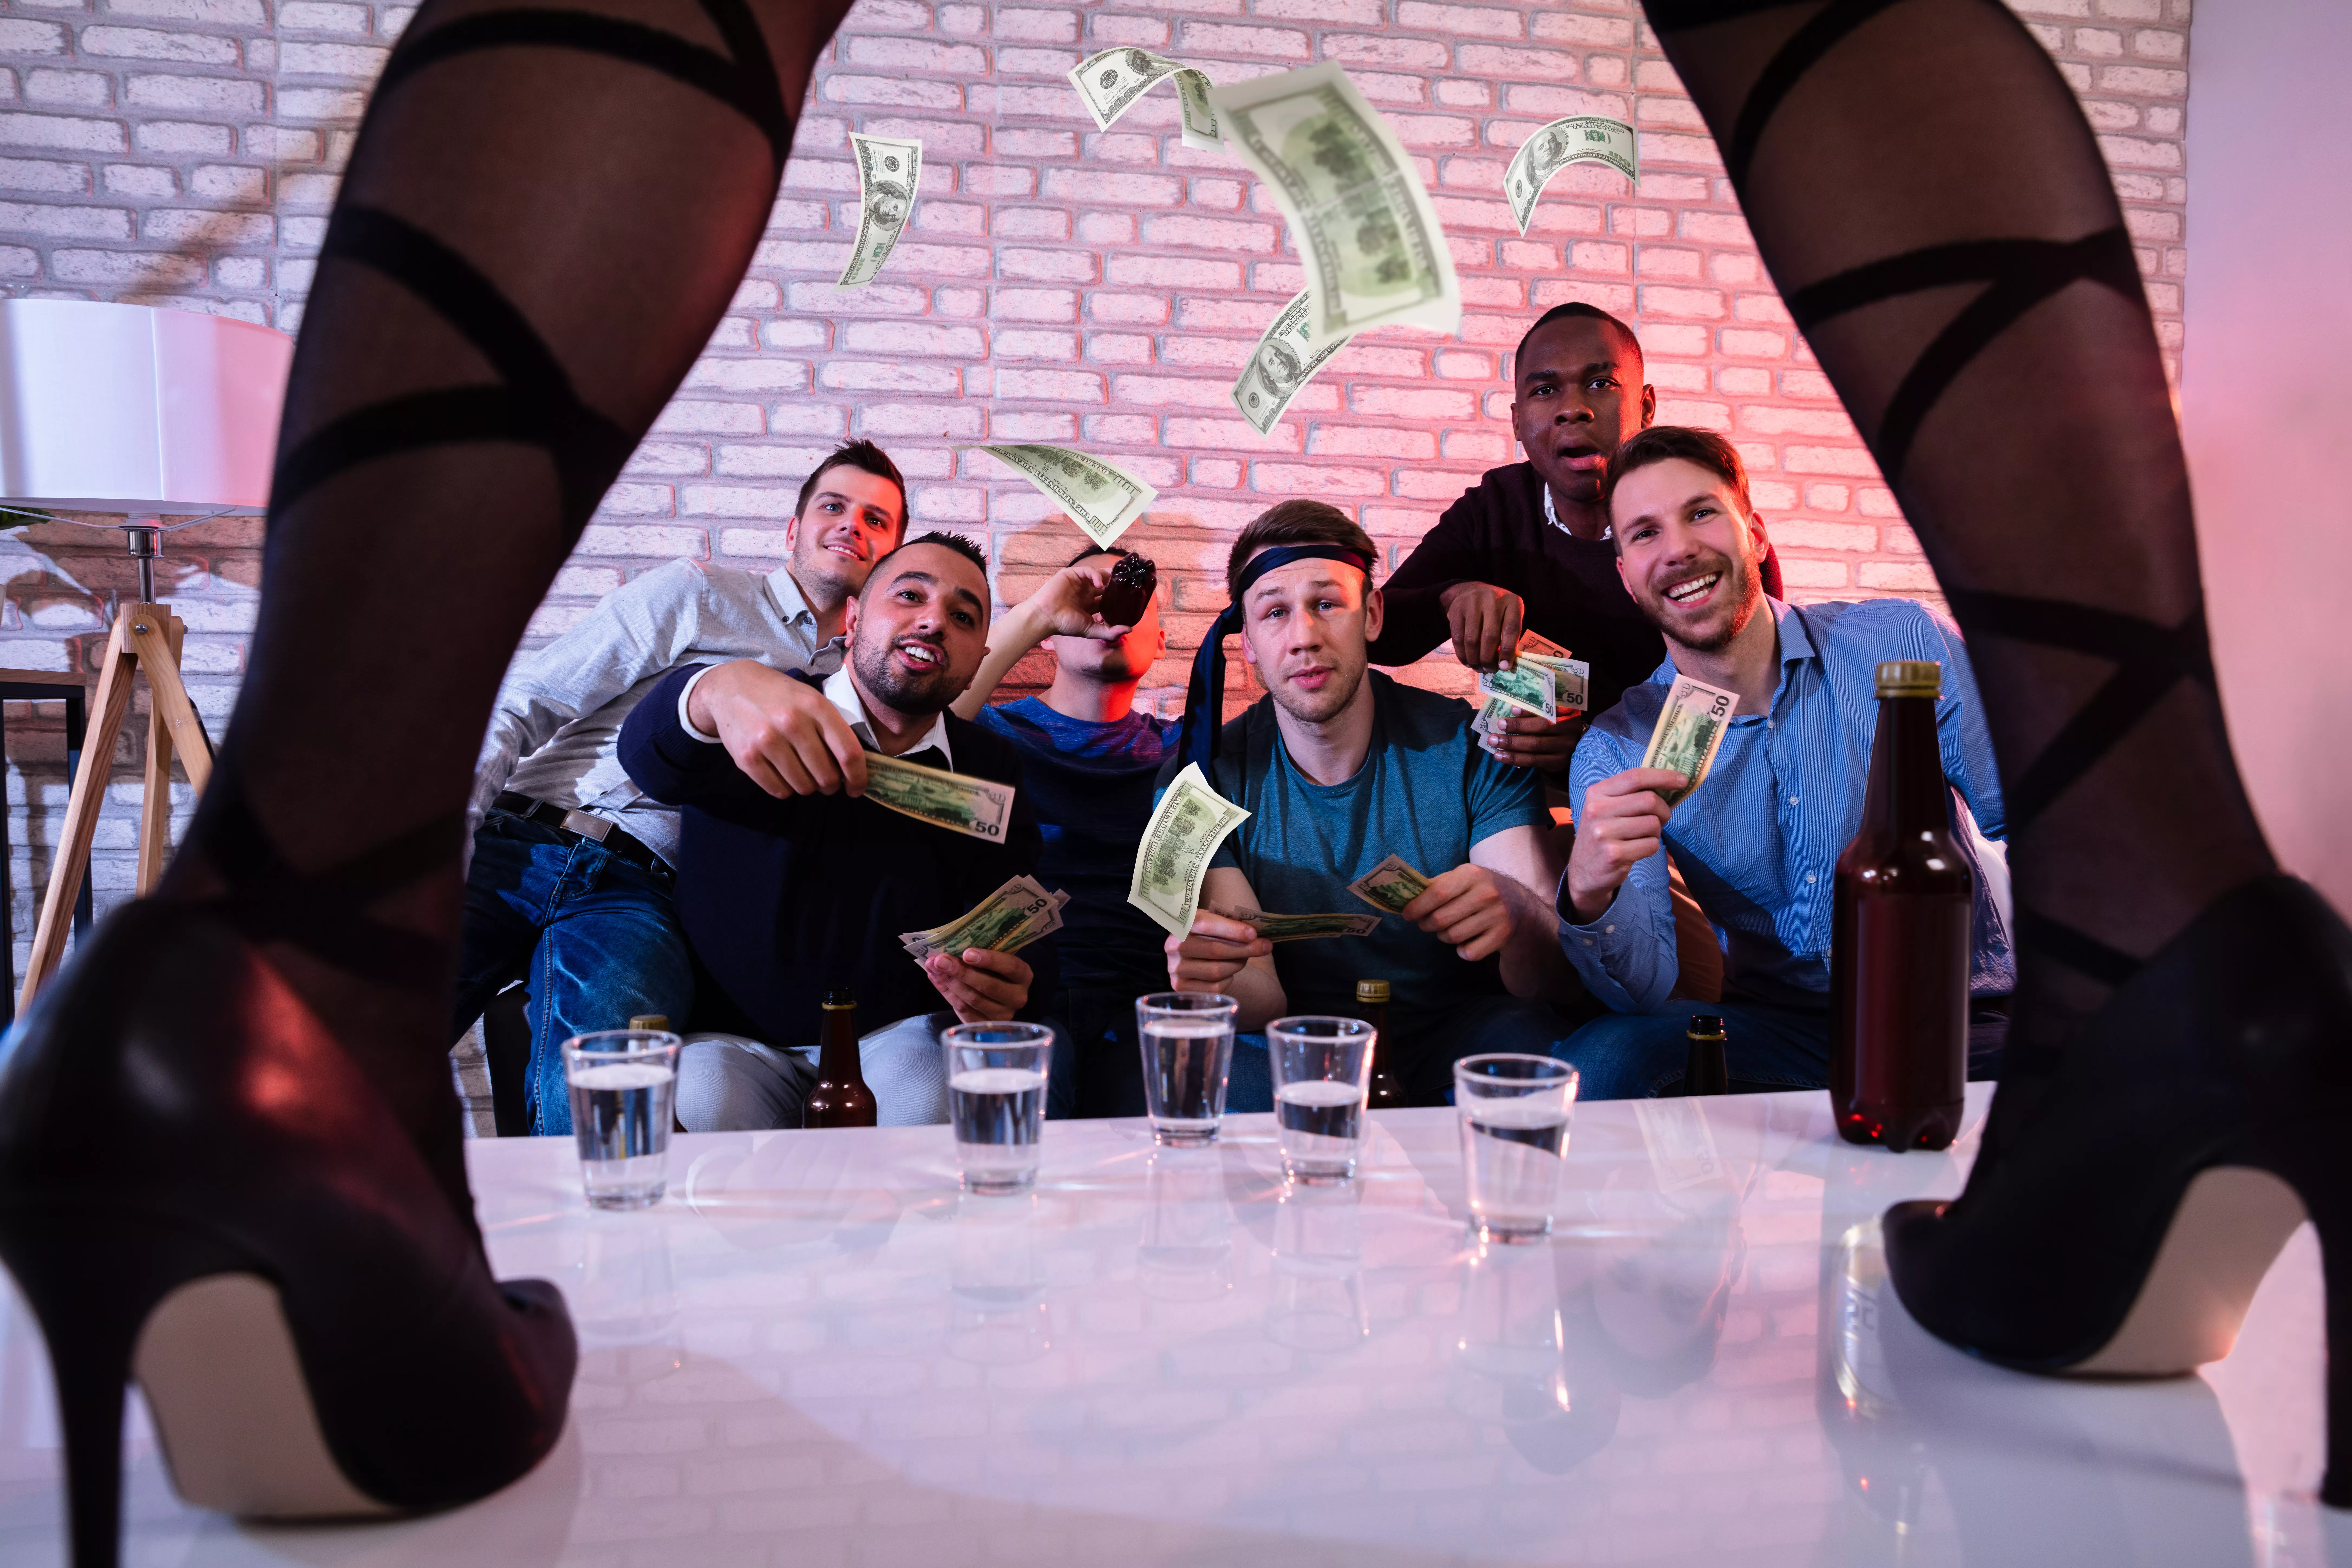 Des amis masculins offrent de l'argent à une strip-teaseuse sur scène